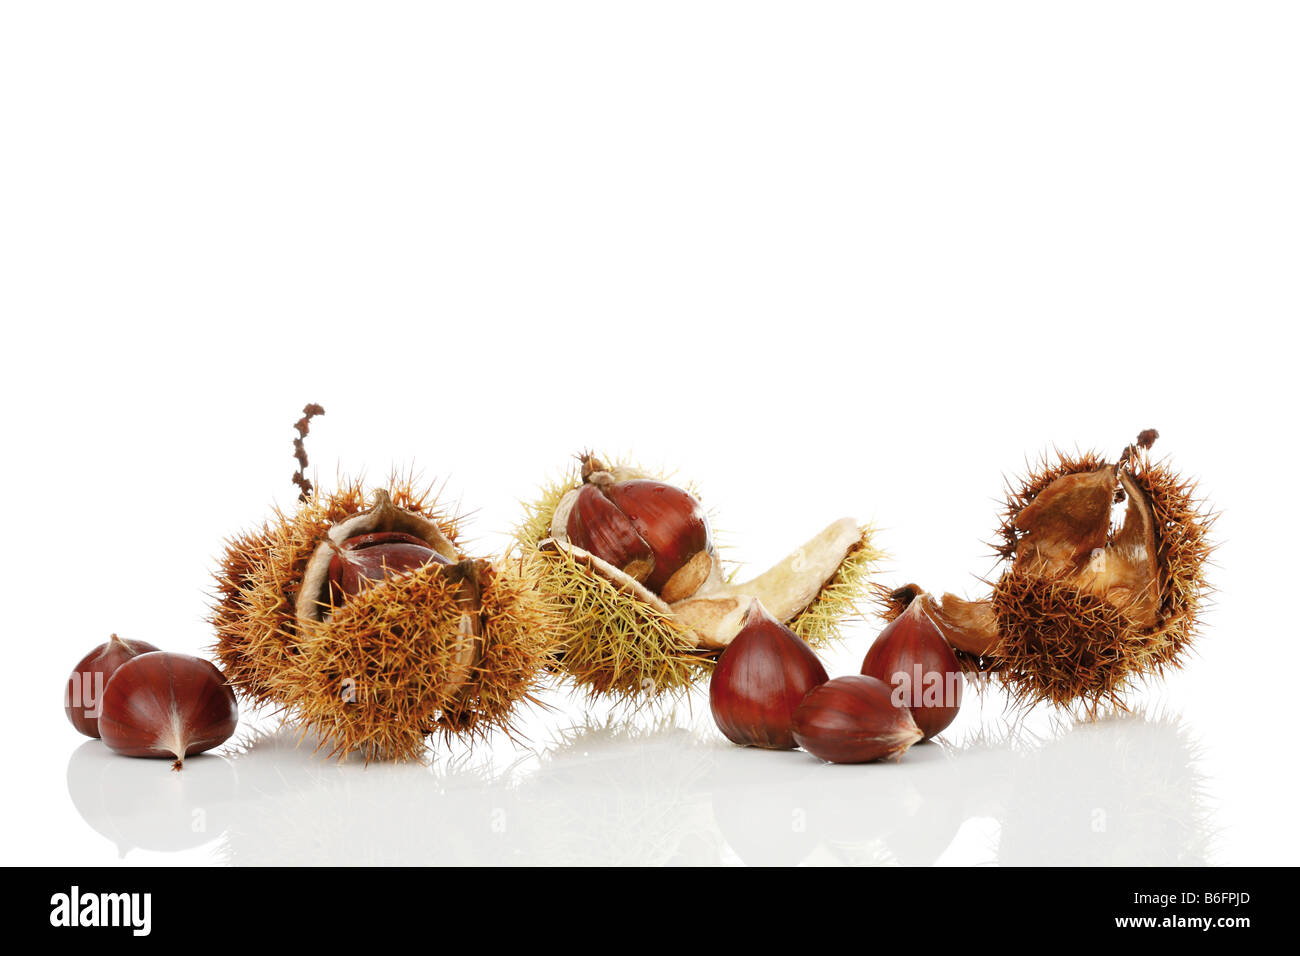 Chestnuts (Castanea) Stock Photo